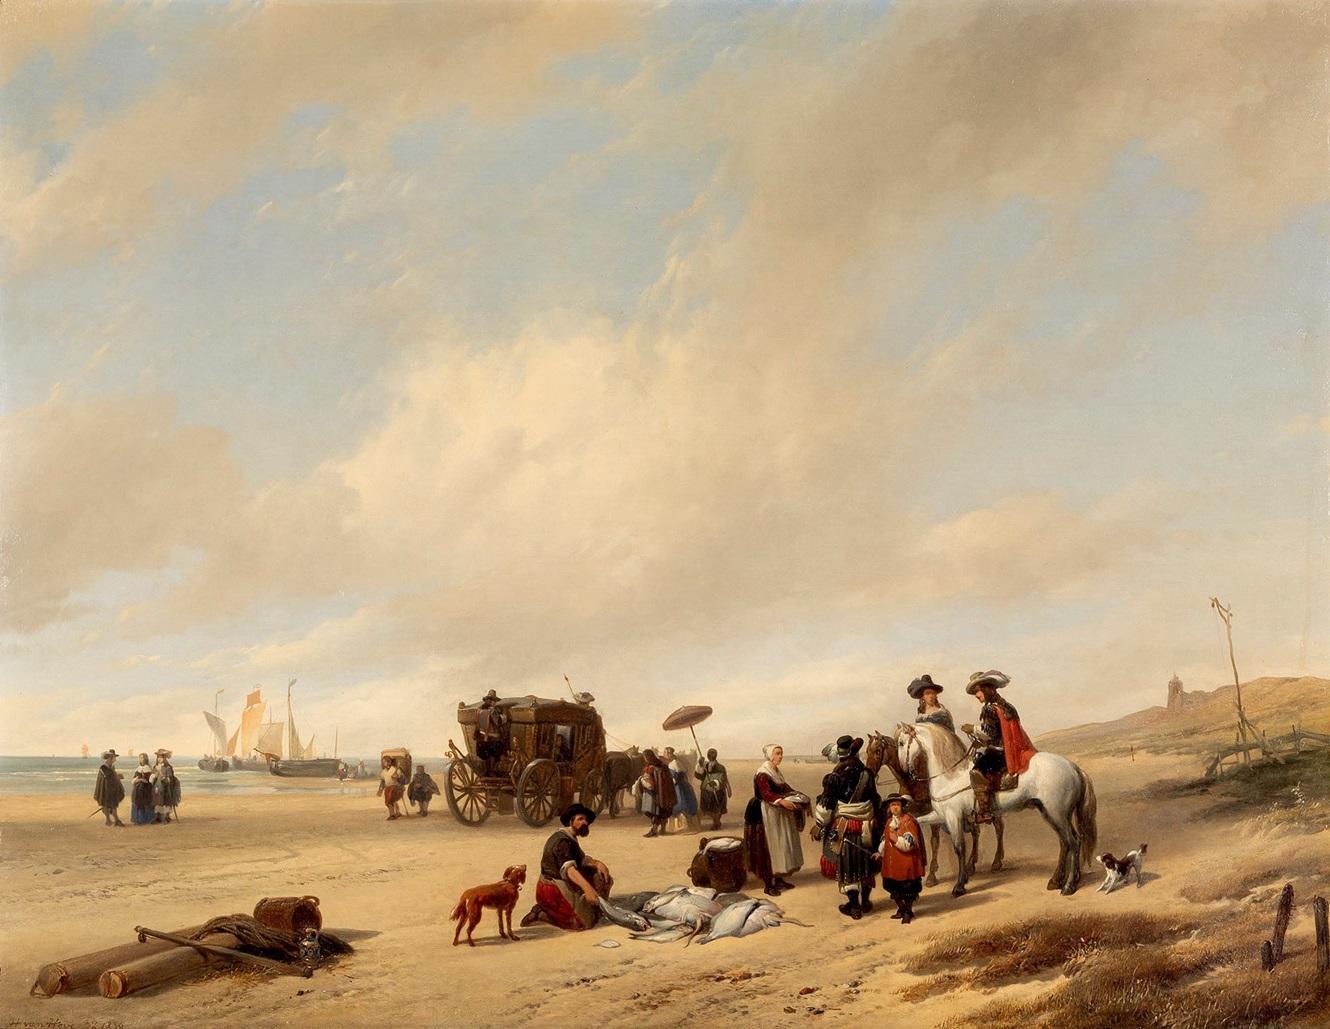 Beach See Water Hubertus Van Hove Signed Paint Oil on table 19th Century Flemish - Painting by Hubertus Van Hove (the Hague, 1814 - Antwerp, 1865)